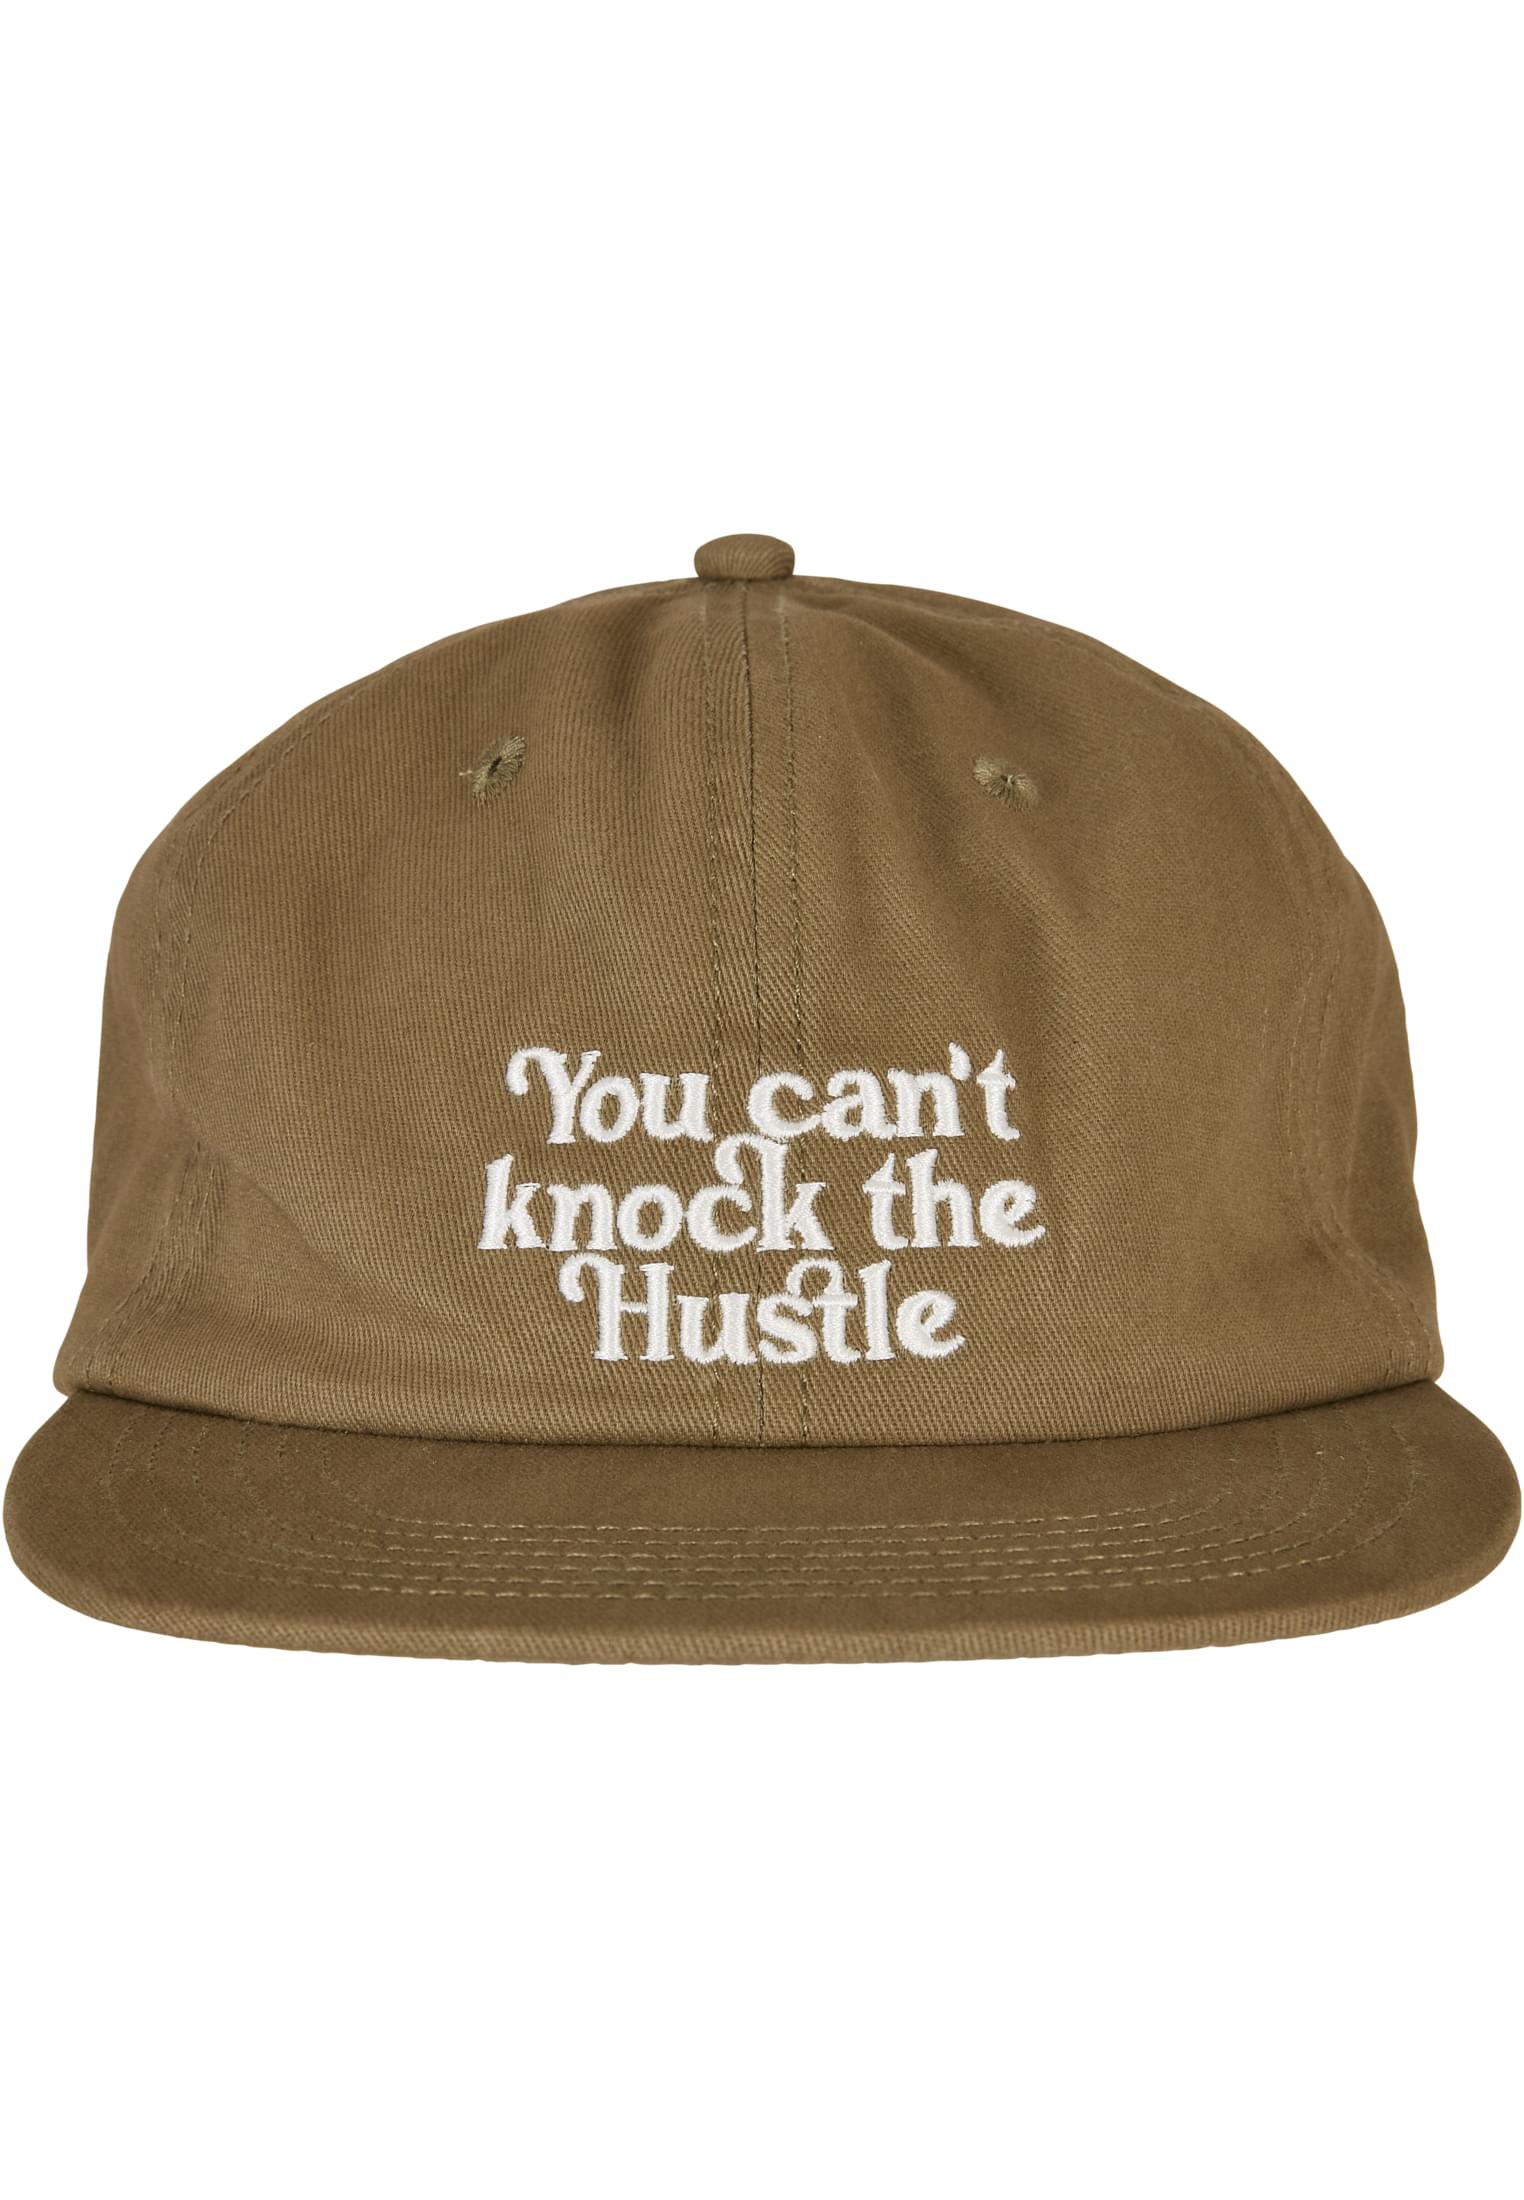 Knock the Hustle Strapback Cap olive/white